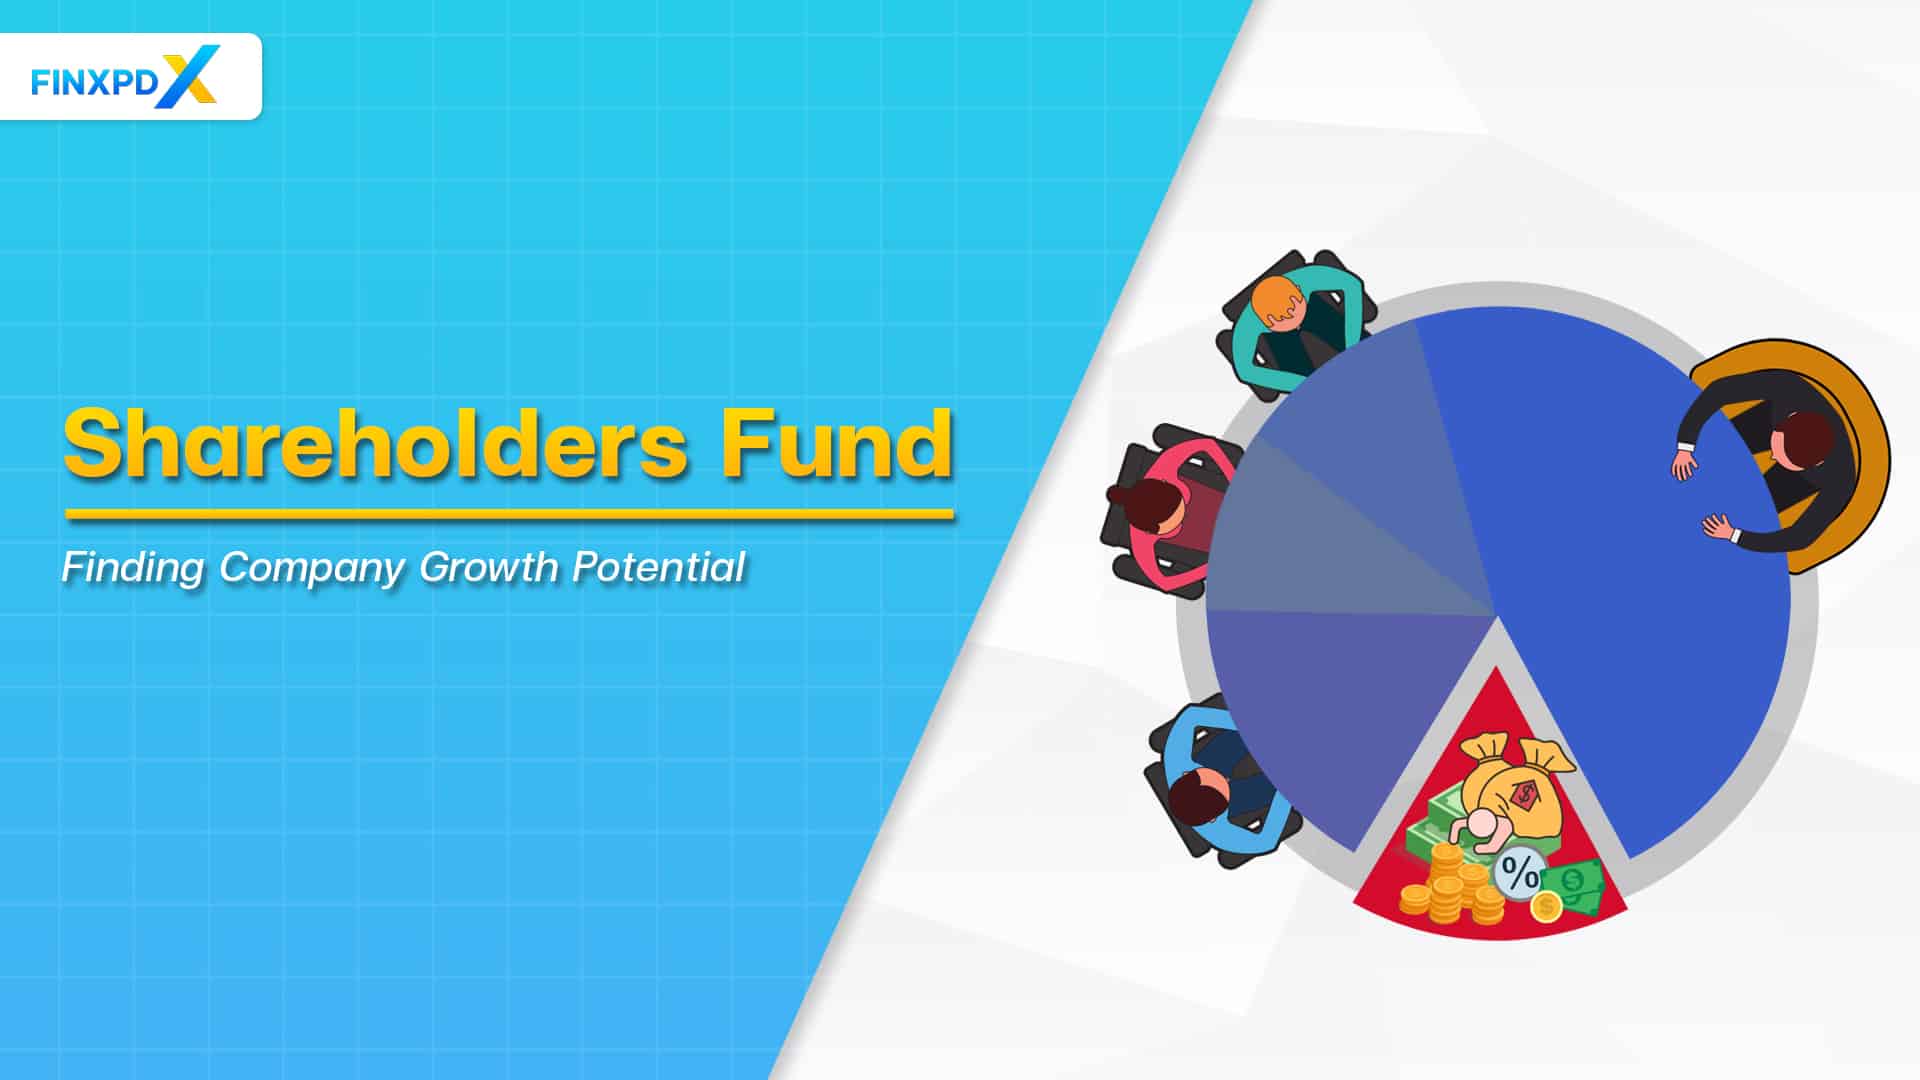 Shareholder's fund